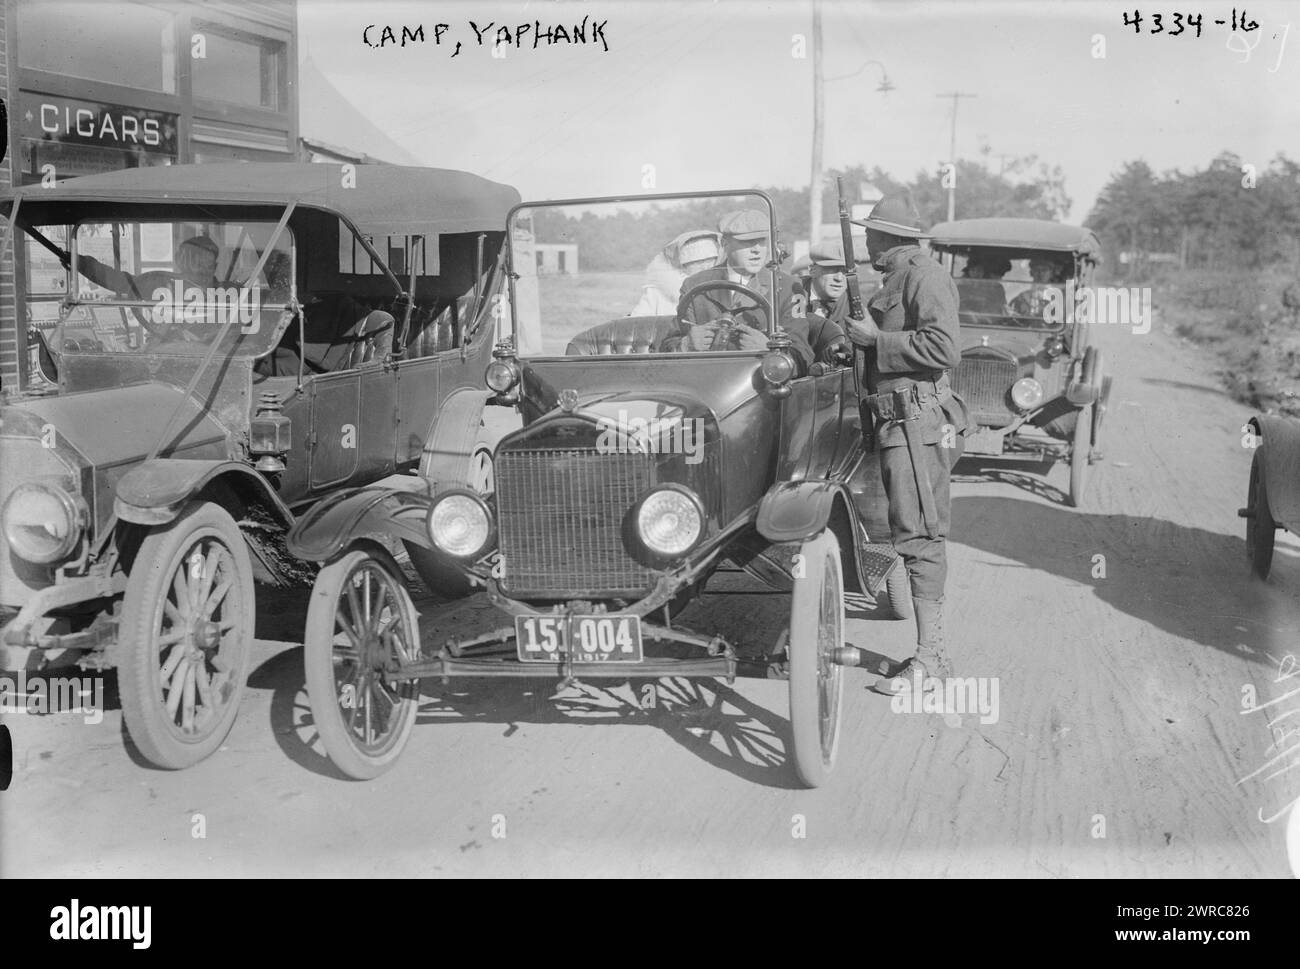 Camp, Yaphank, la fotografia mostra le auto a Camp Upton, un'installazione dell'esercito americano situata a Long Island, a Yaphank, New York, durante la prima guerra mondiale, 1917 settembre 14, Glass negatives, 1 negative: Glass Foto Stock